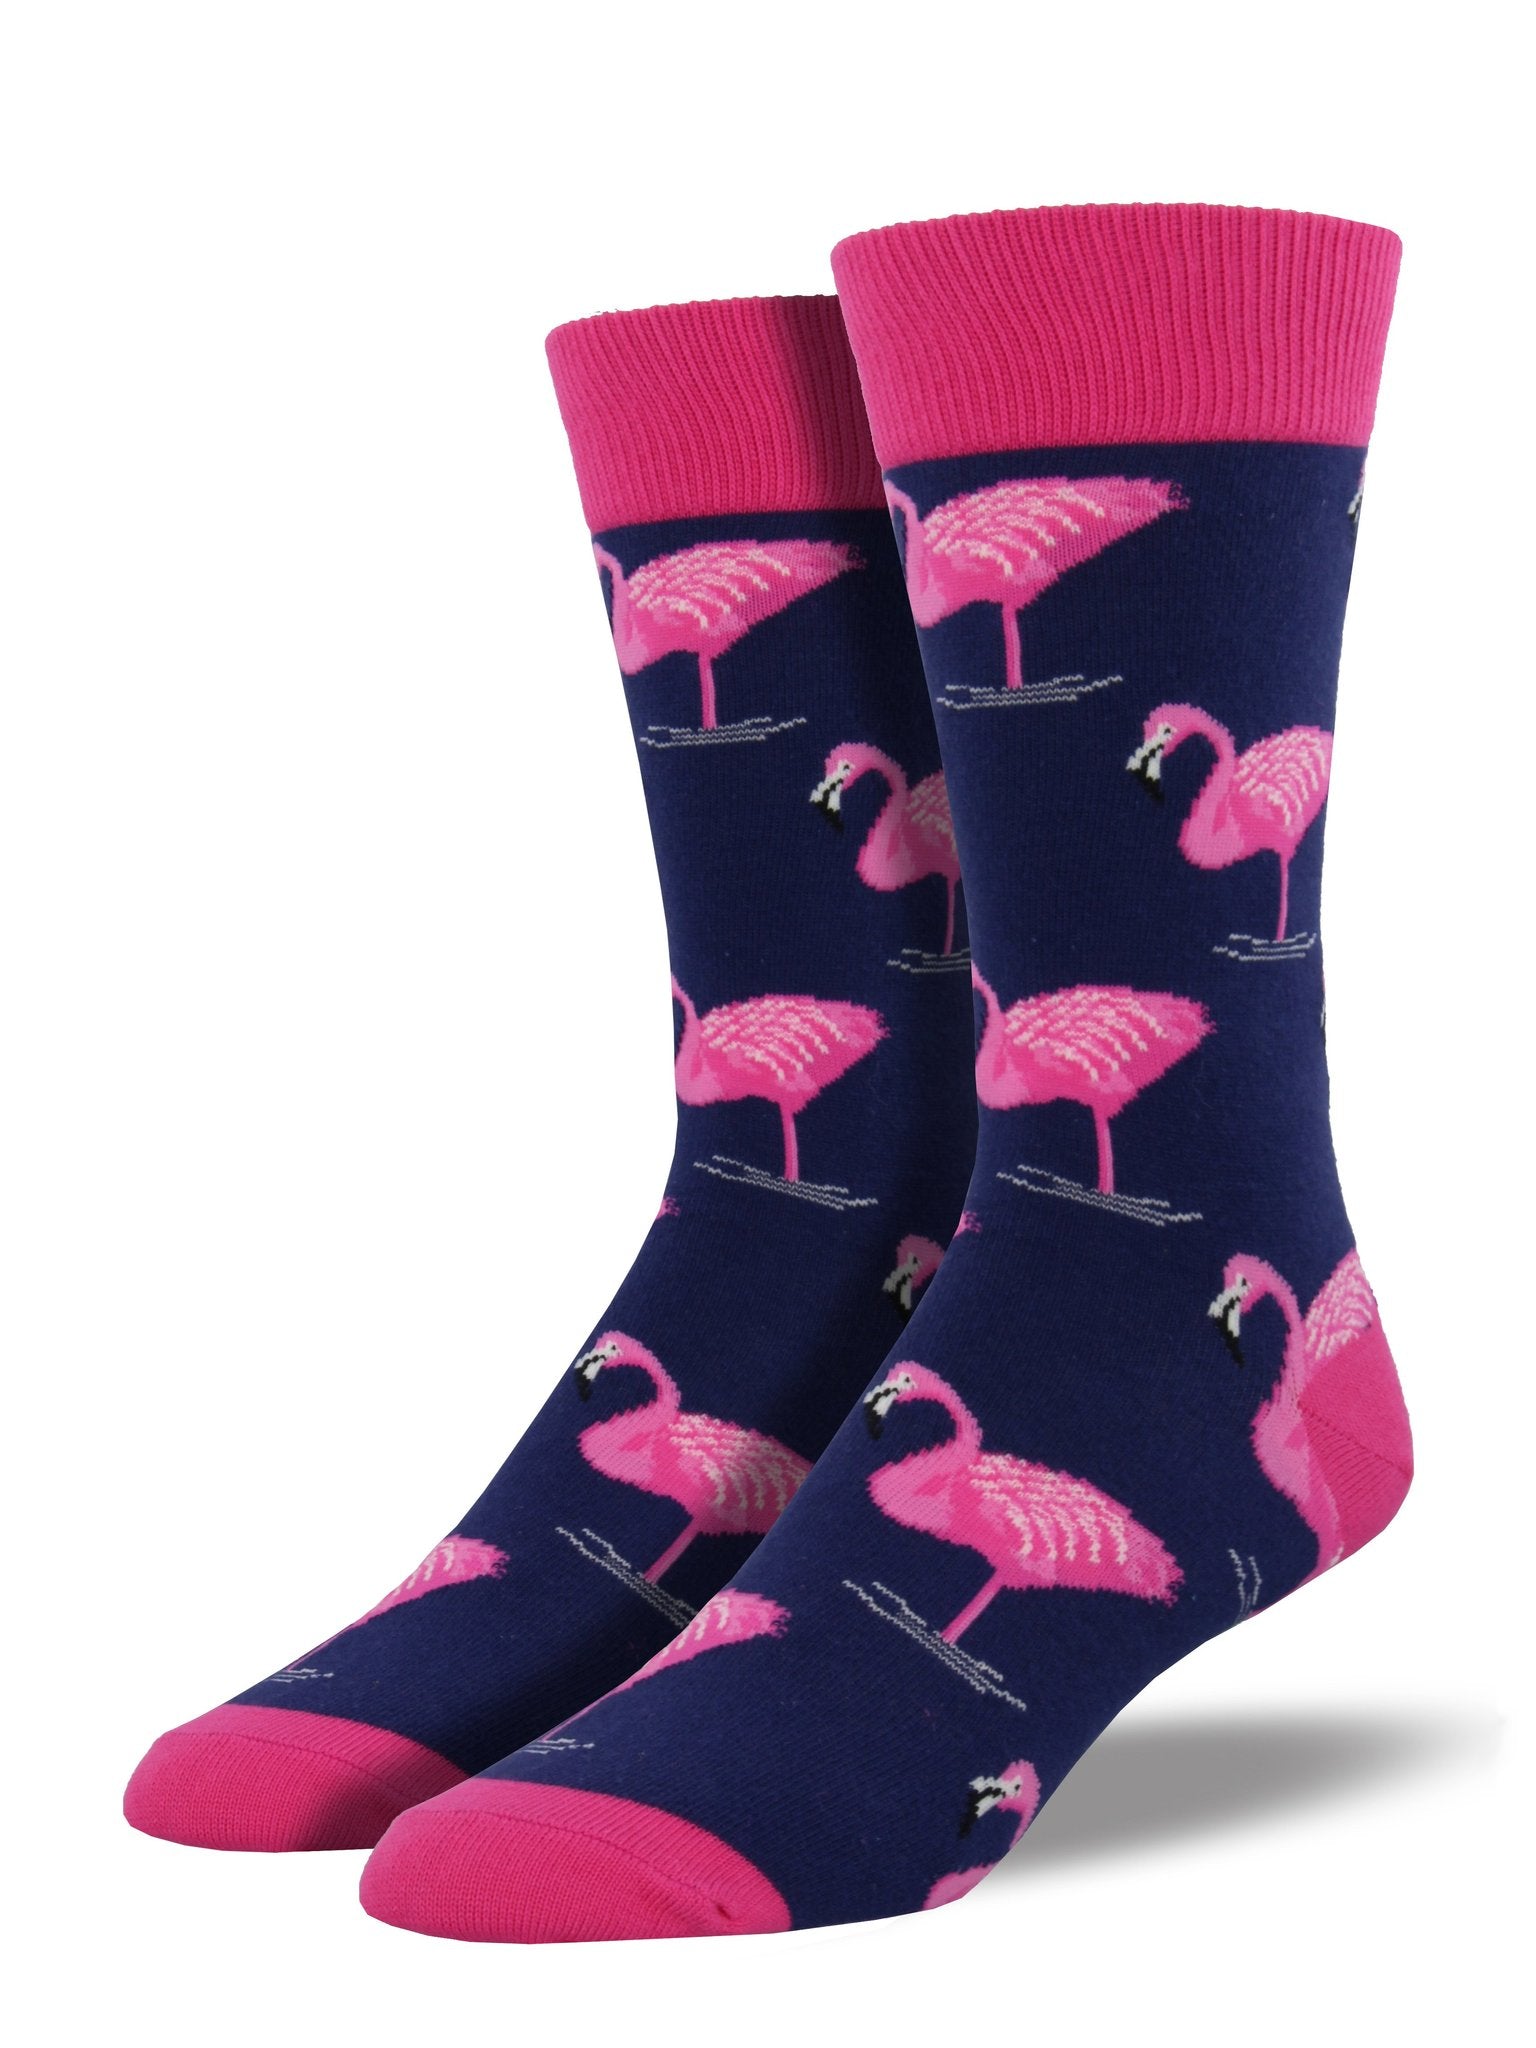 Socksmith Men's "Flamingo" Crew Socks